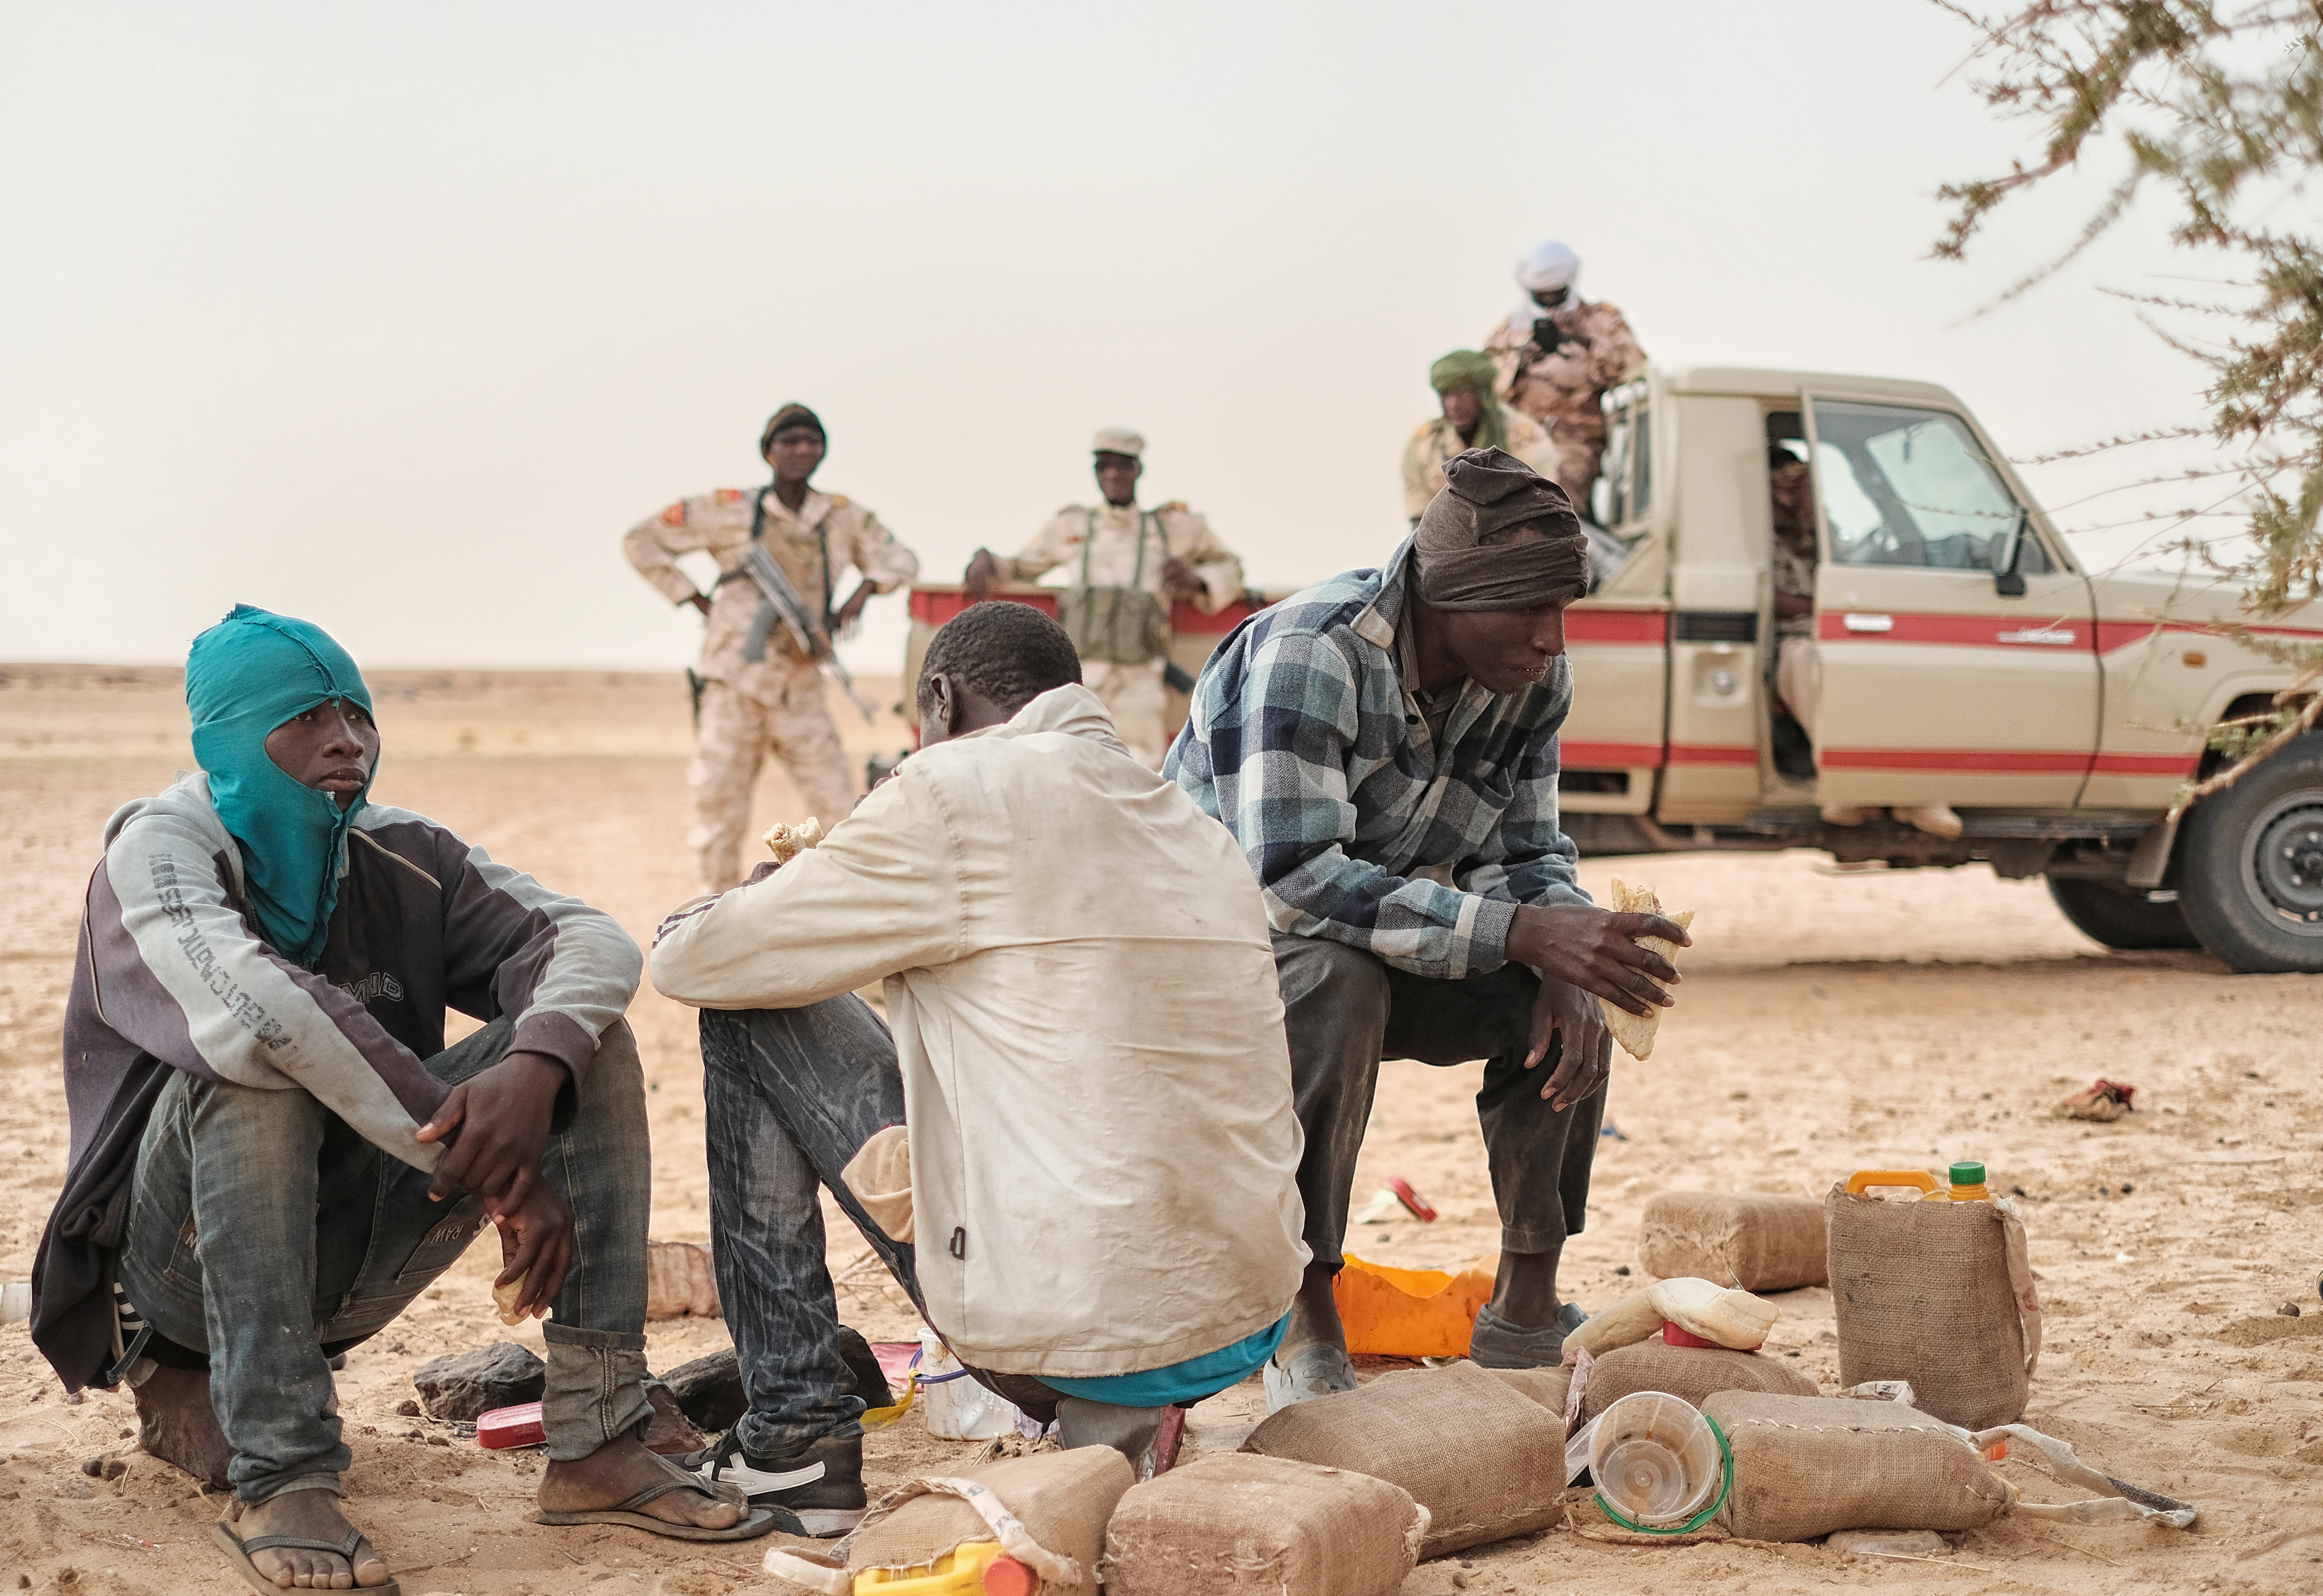 Migranti abbandonati nel Sahara vengono trovati da una pattuglia militare, sulla rotta verso la Libia (foto: Giacomo Zandonini)